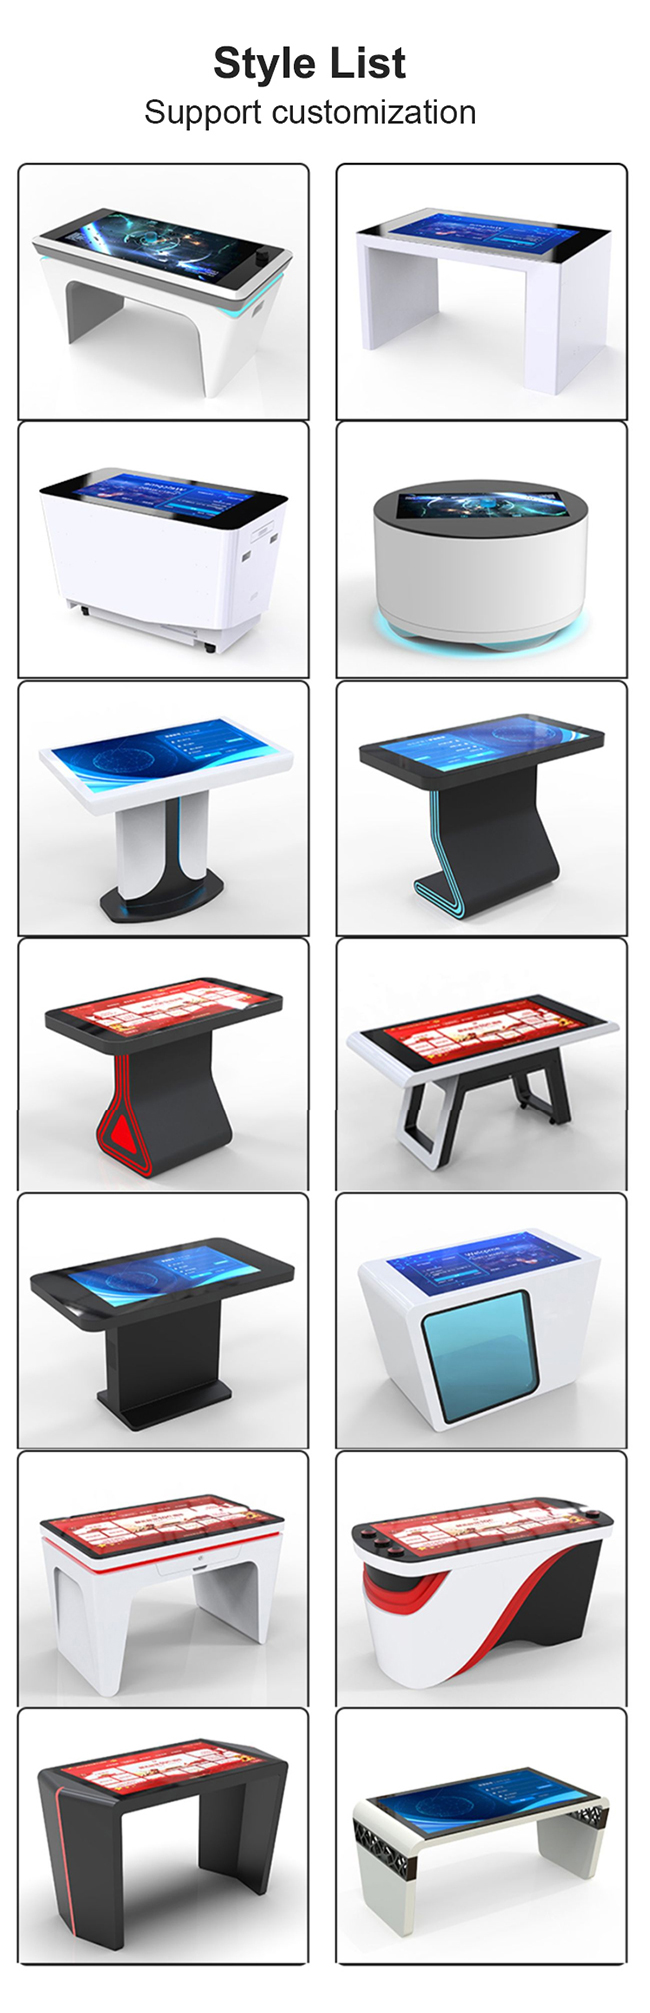 43インチの人間の特徴をもつ相互多タッチ画面棒テーブル、Smurfsの目的認識のテーブル